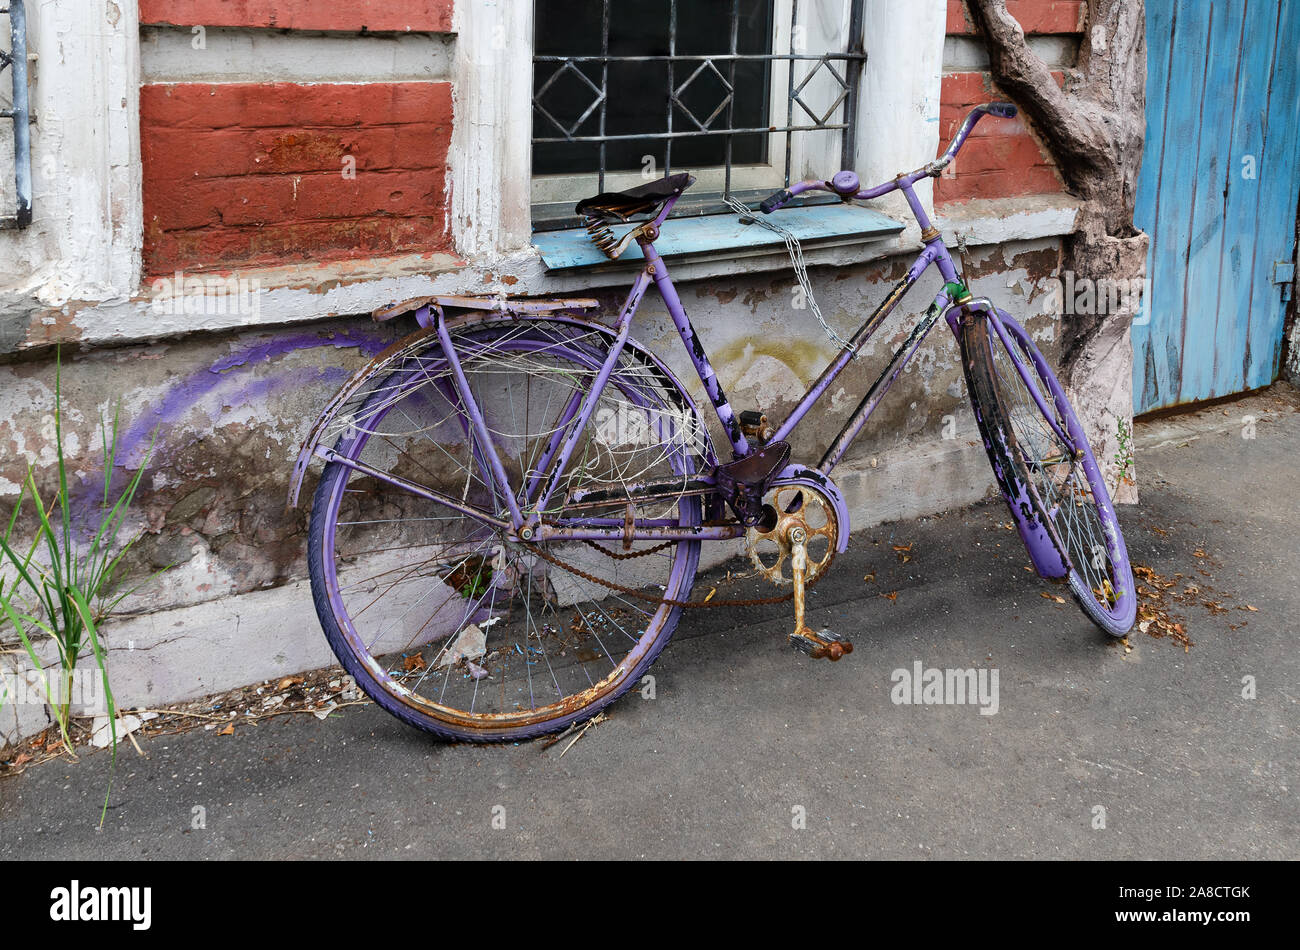 Un vieux vélo repeint près de la maison Banque D'Images